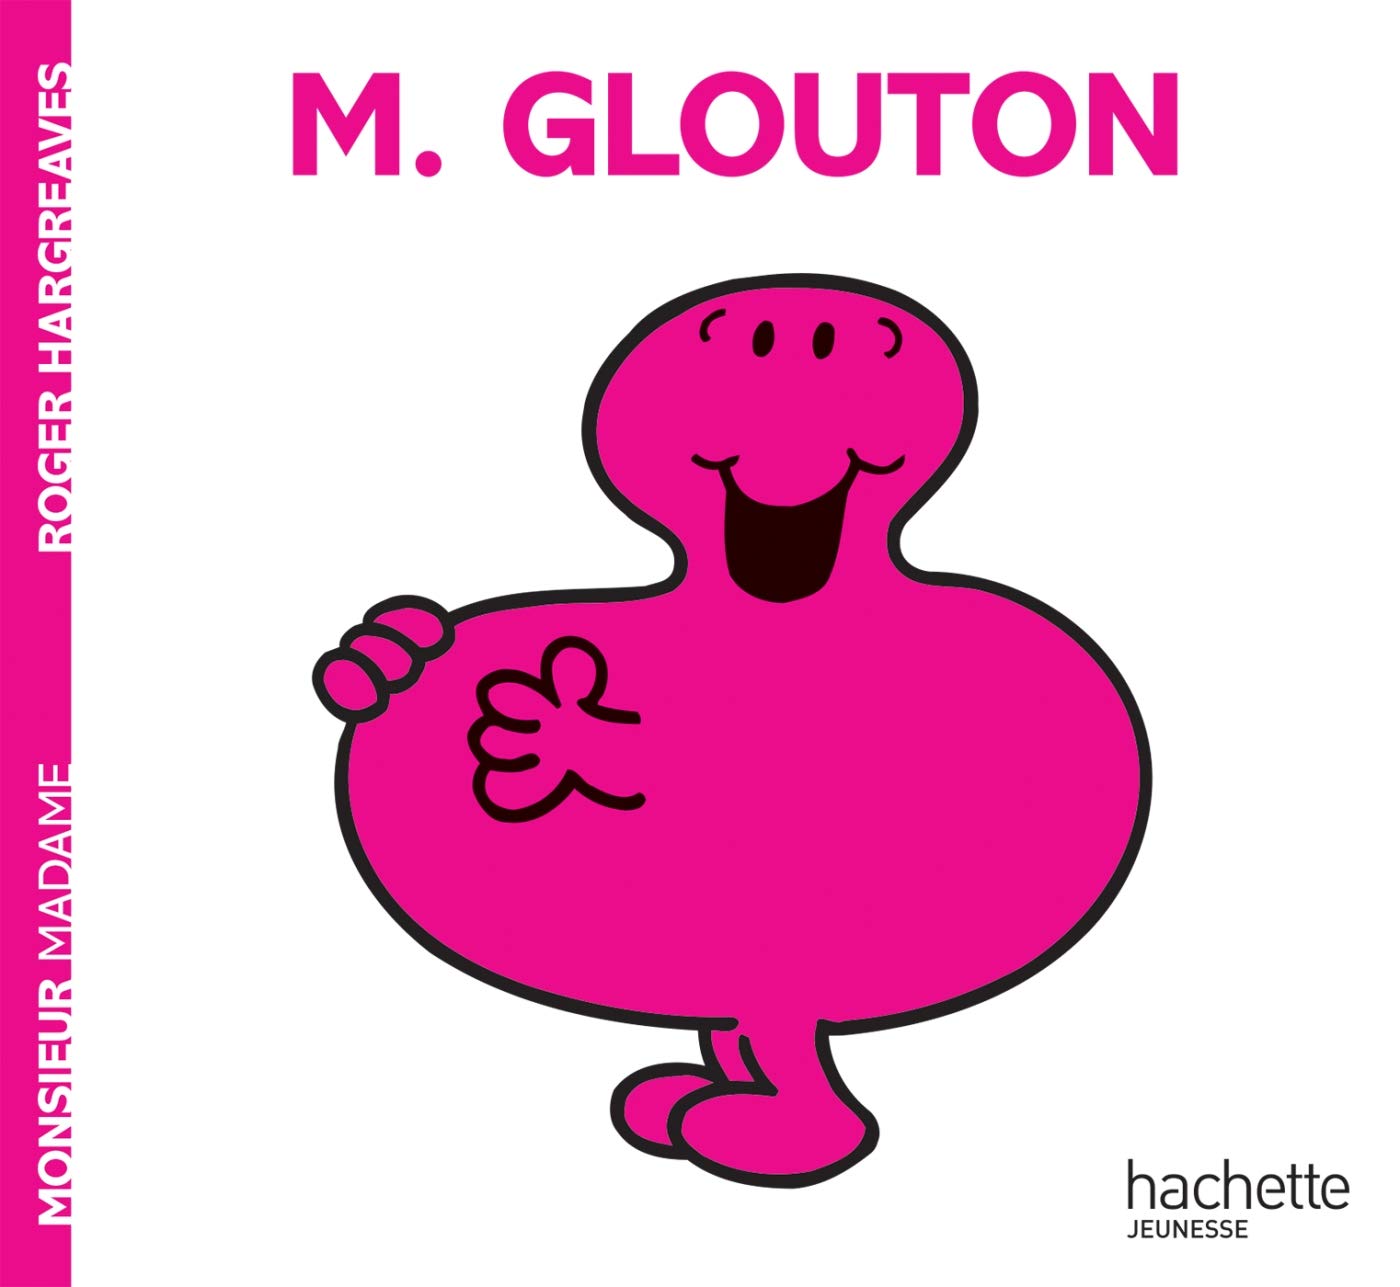 Monsieur Glouton (Monsieur Madame) (French Edition)